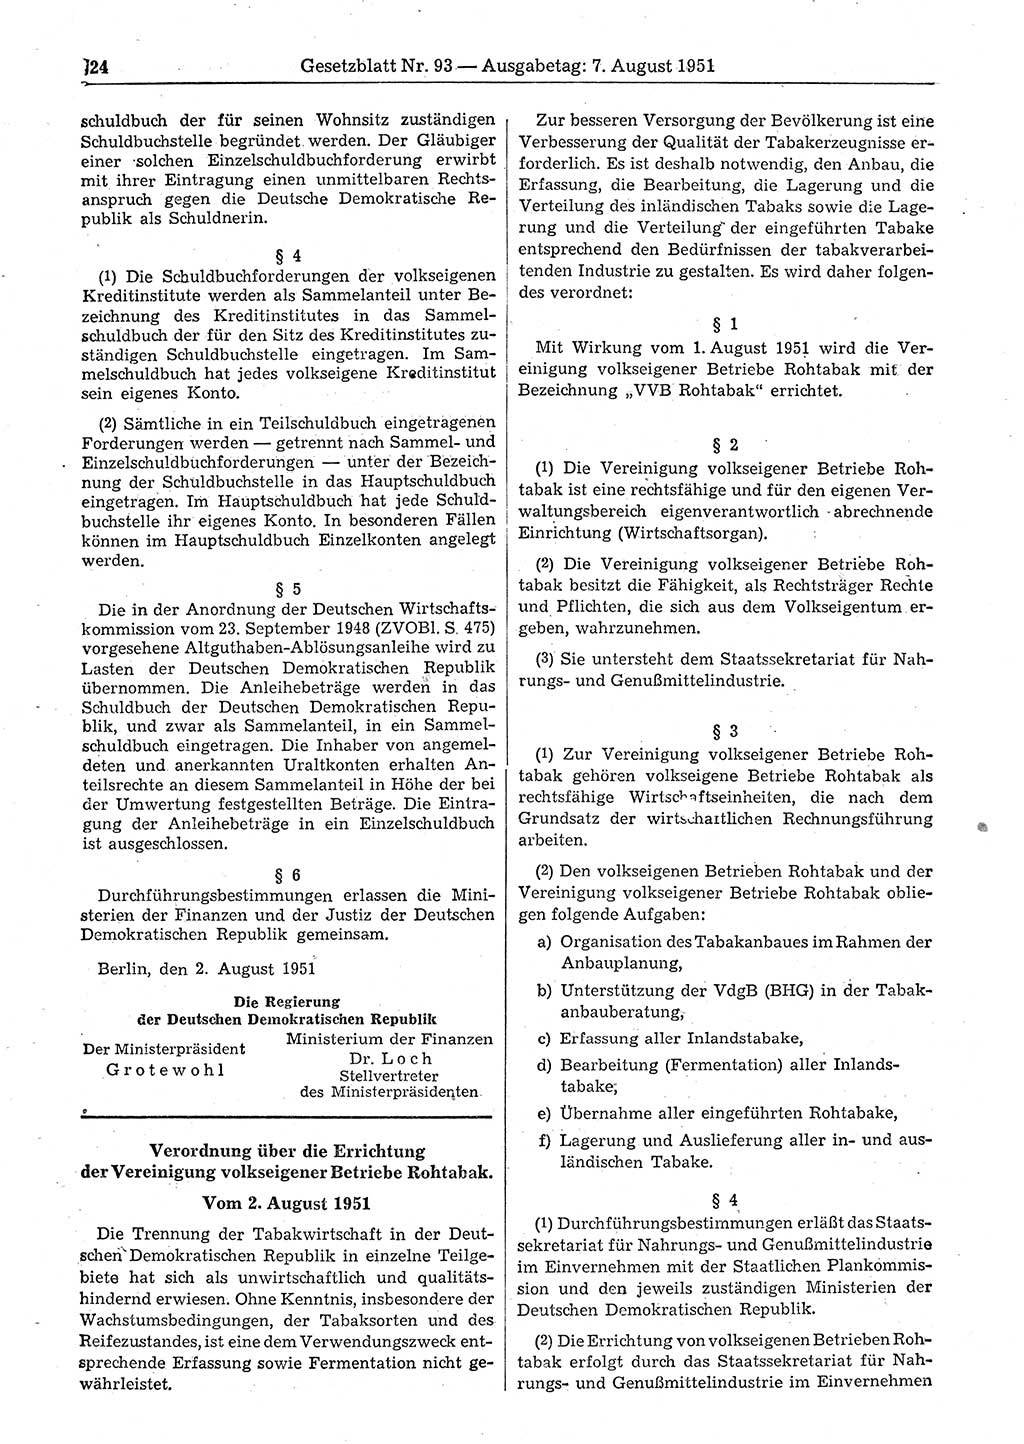 Gesetzblatt (GBl.) der Deutschen Demokratischen Republik (DDR) 1951, Seite 724 (GBl. DDR 1951, S. 724)